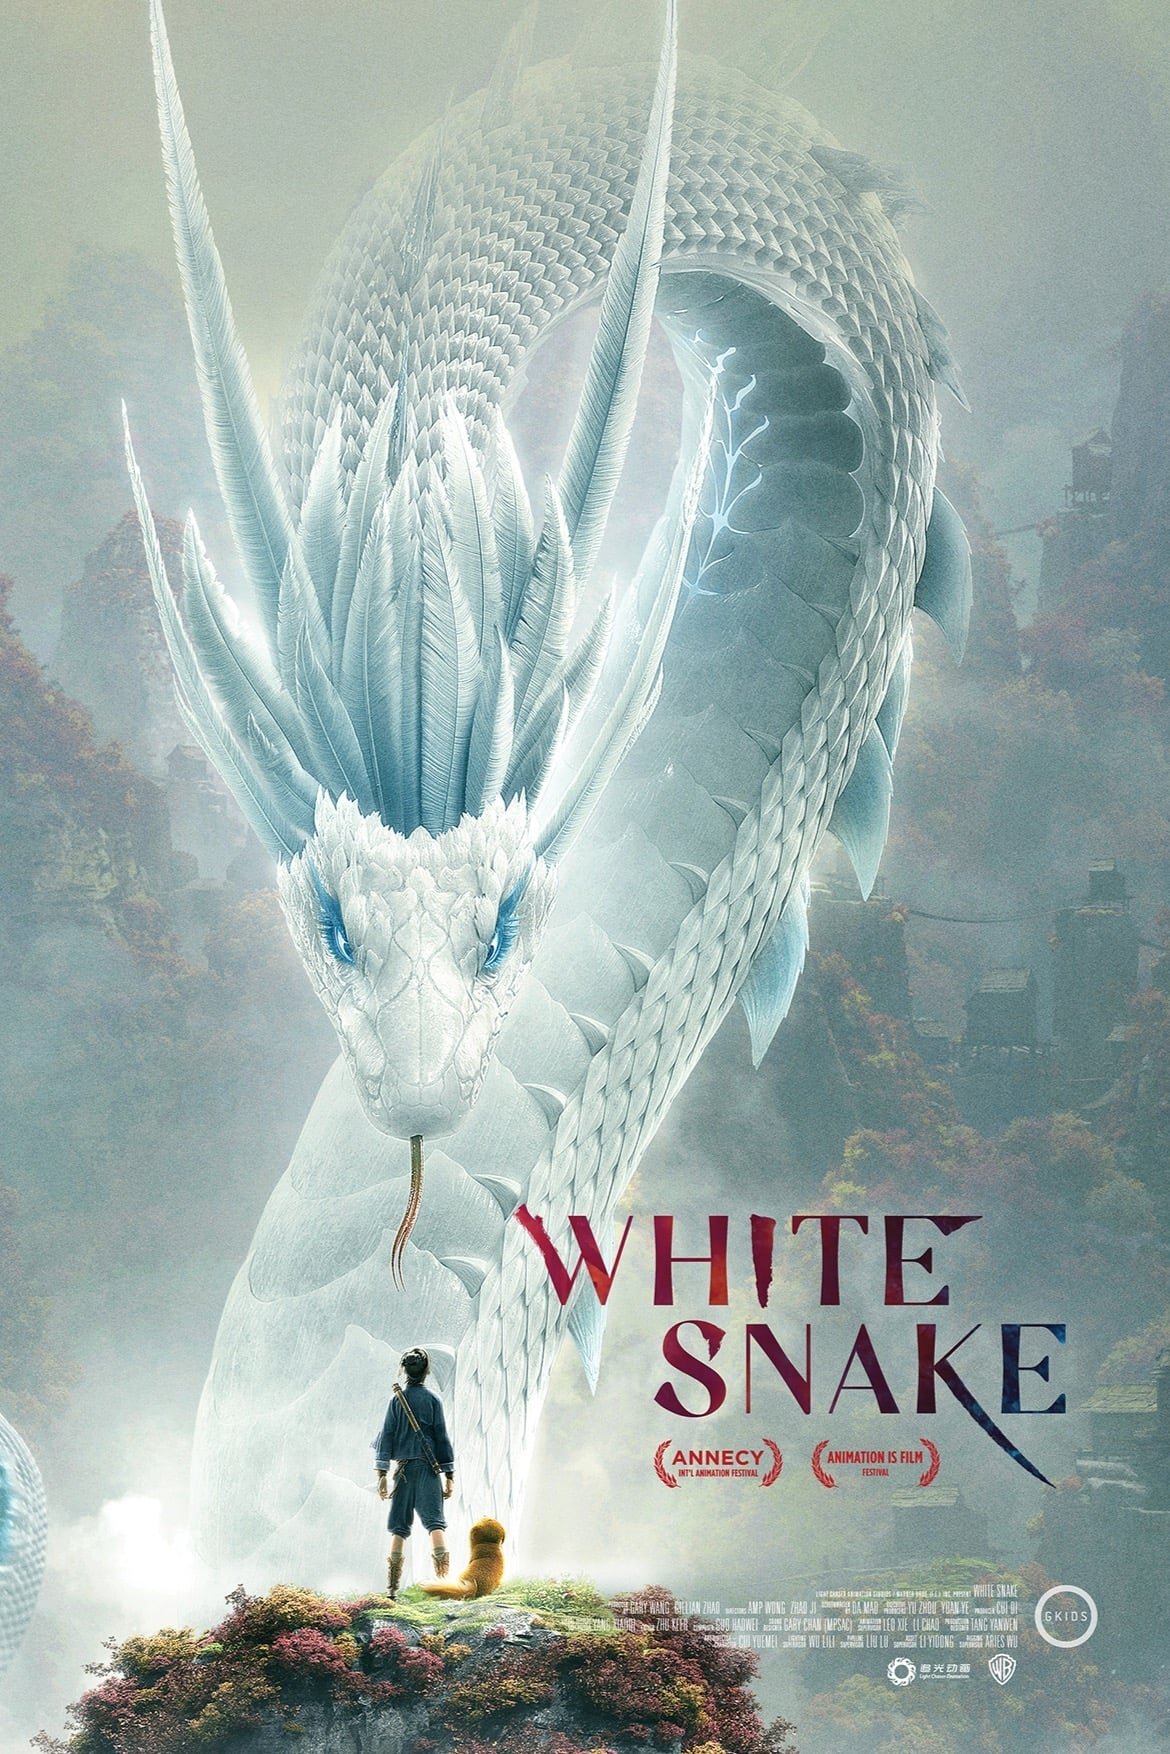 ดูหนังออนไลน์ฟรี White Snake ตำนาน นางพญางูขาว 2019